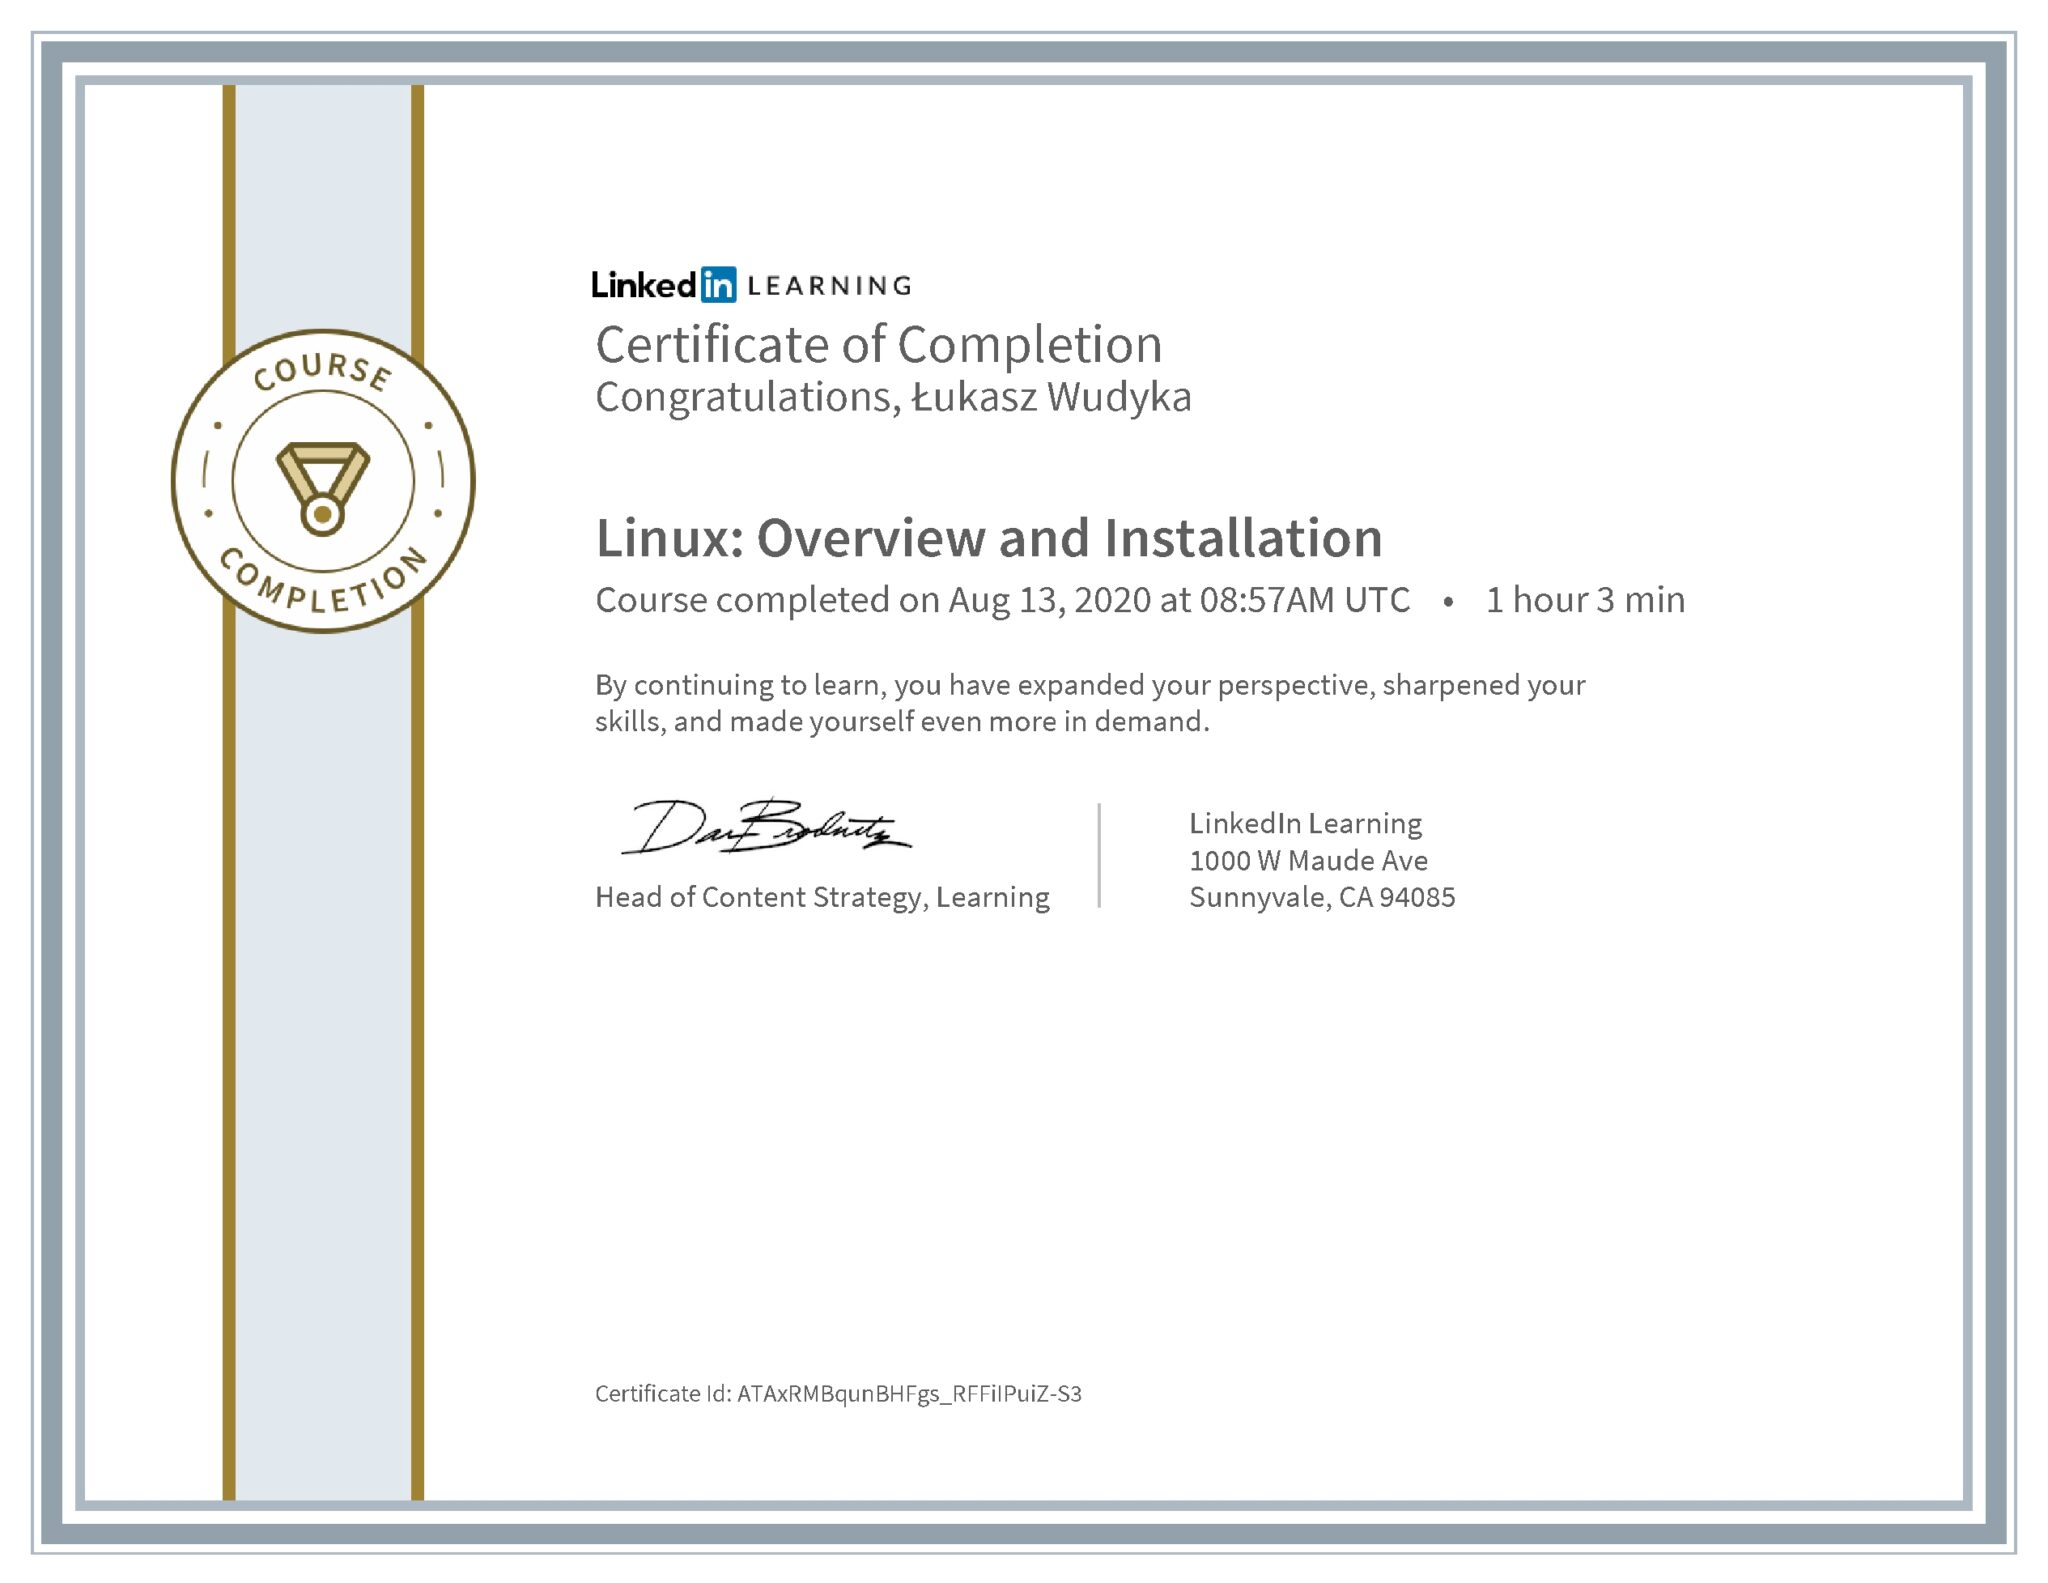 Łukasz Wudyka certyfikat LinkedIn Linux: Overview and Installation